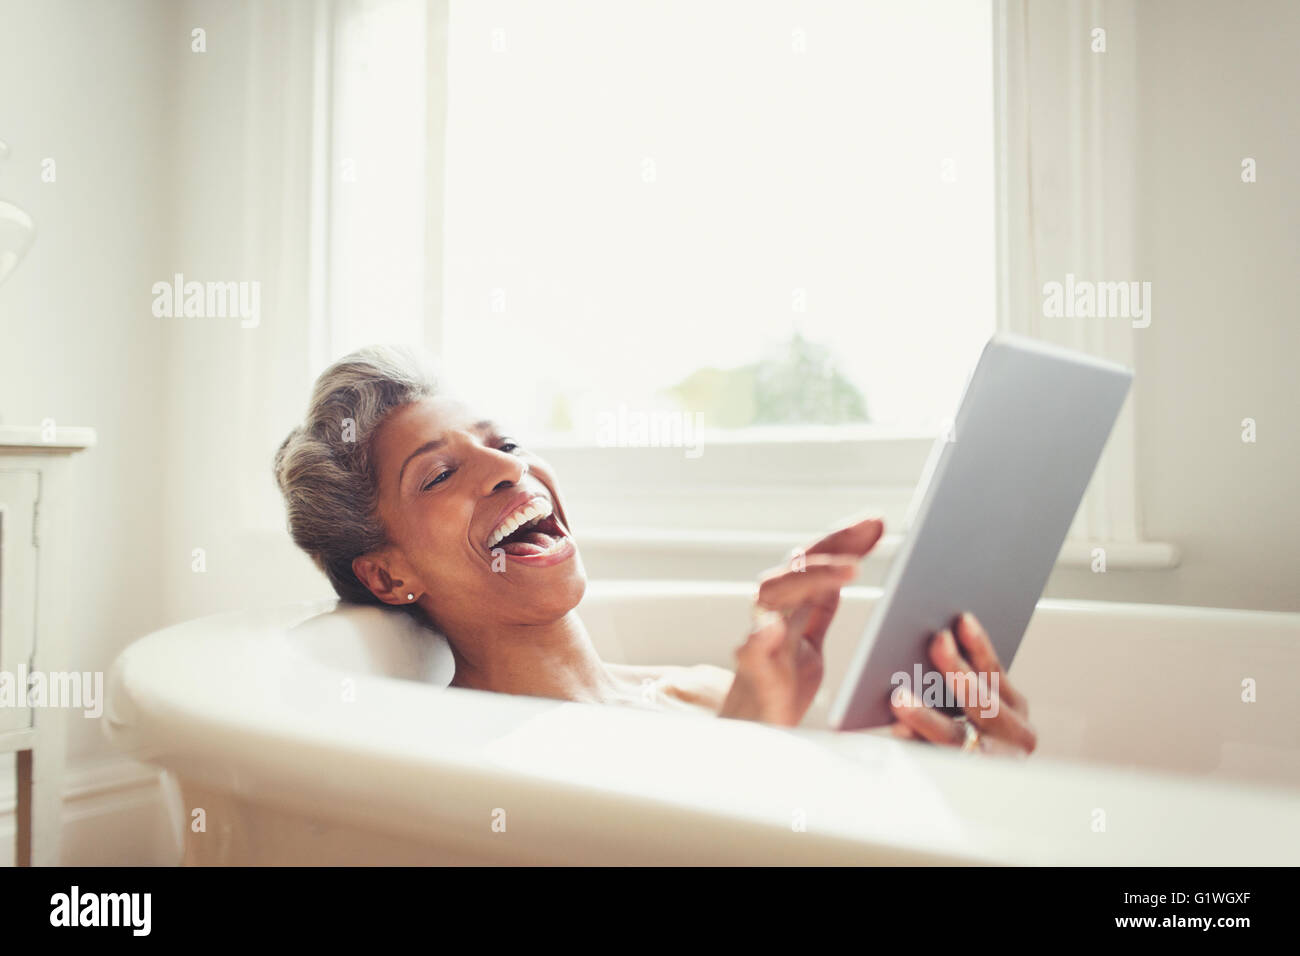 Ridendo donna matura con tavoletta digitale nella vasca da bagno Foto Stock